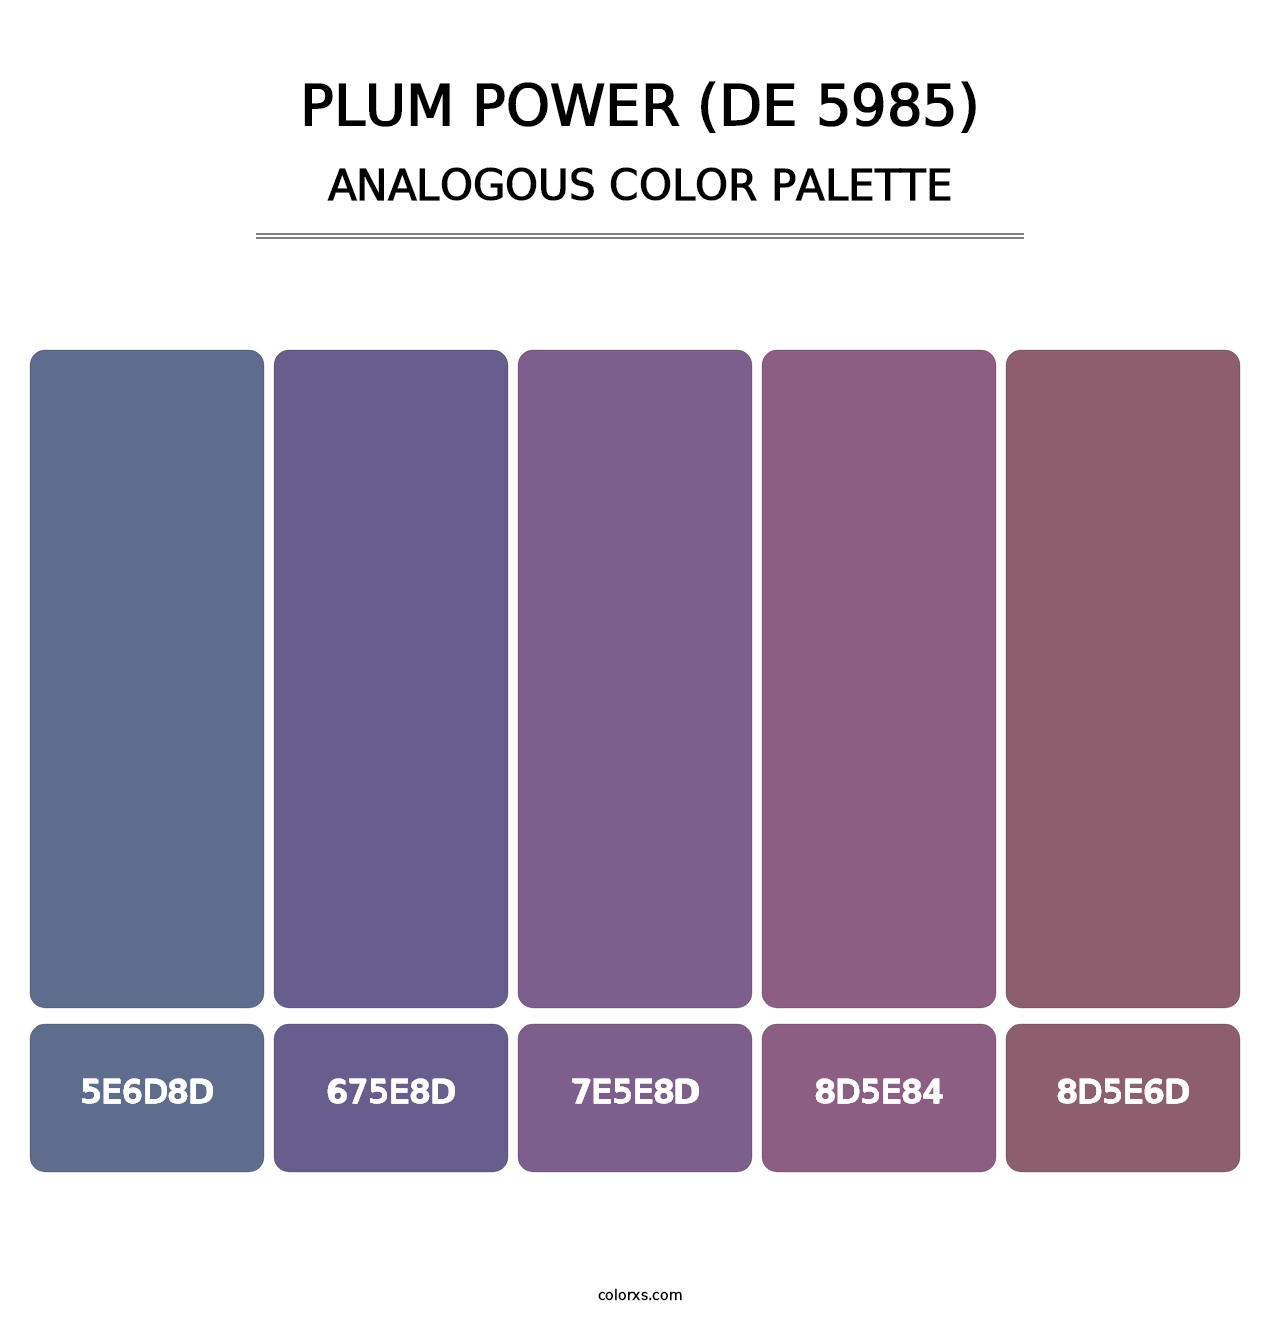 Plum Power (DE 5985) - Analogous Color Palette